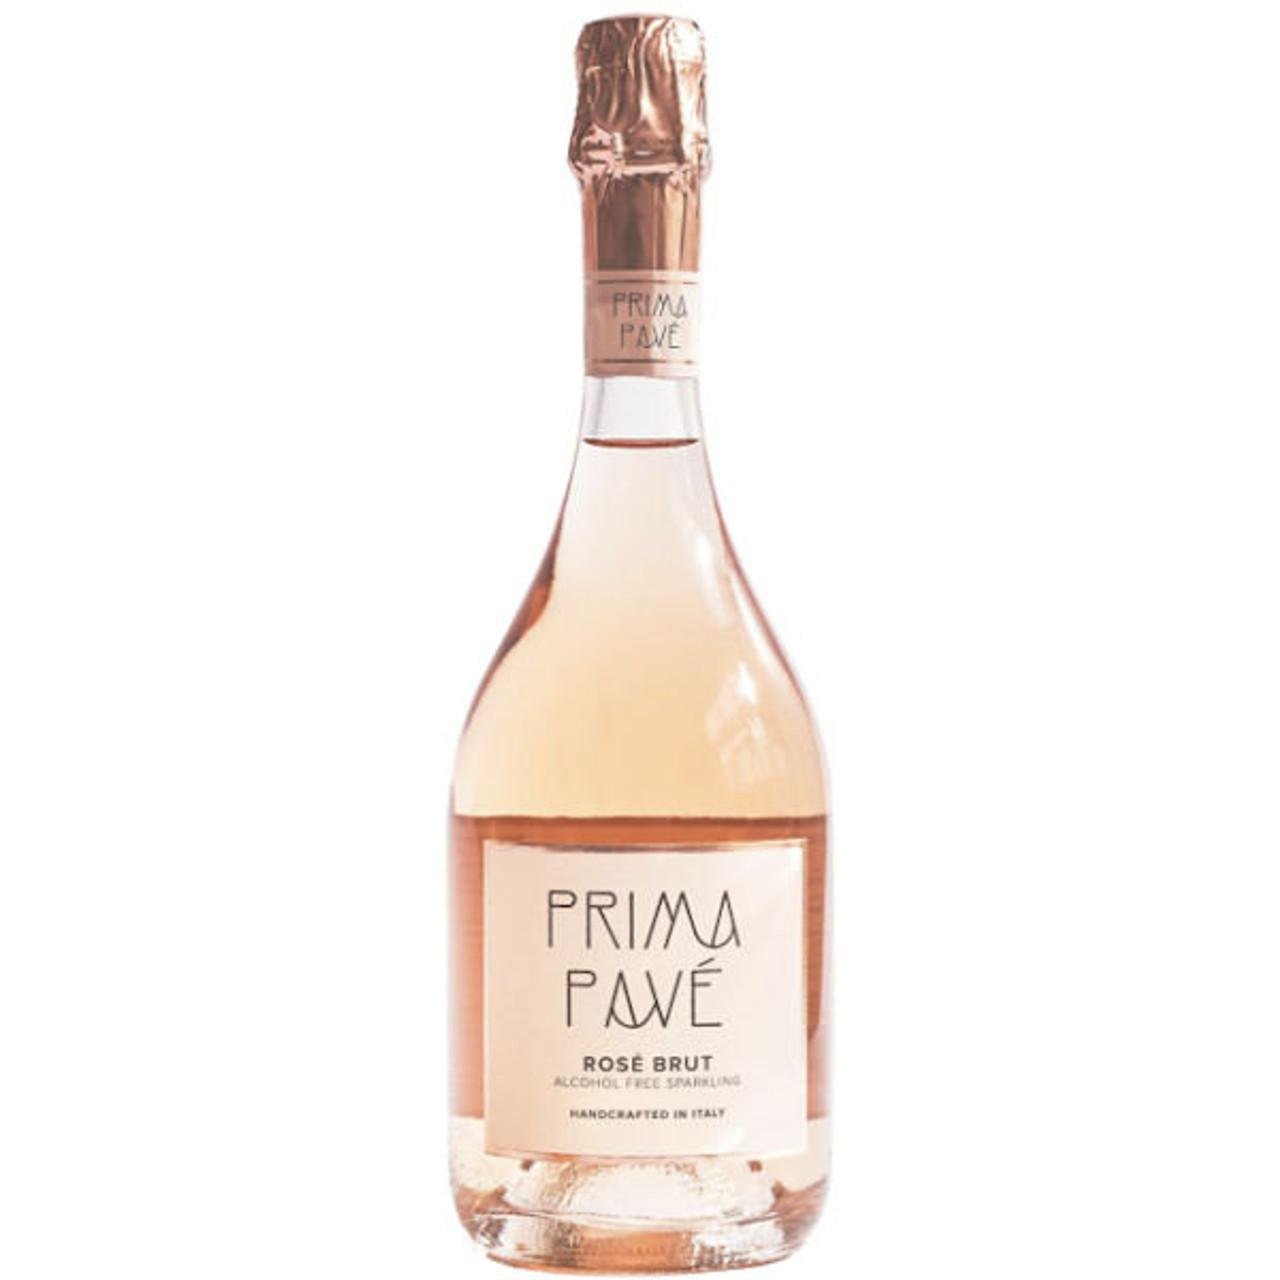 Prima Pave - 'Rose Brut' Alcohol-Free Sparkling Wine (750ML) - The Epicurean Trader